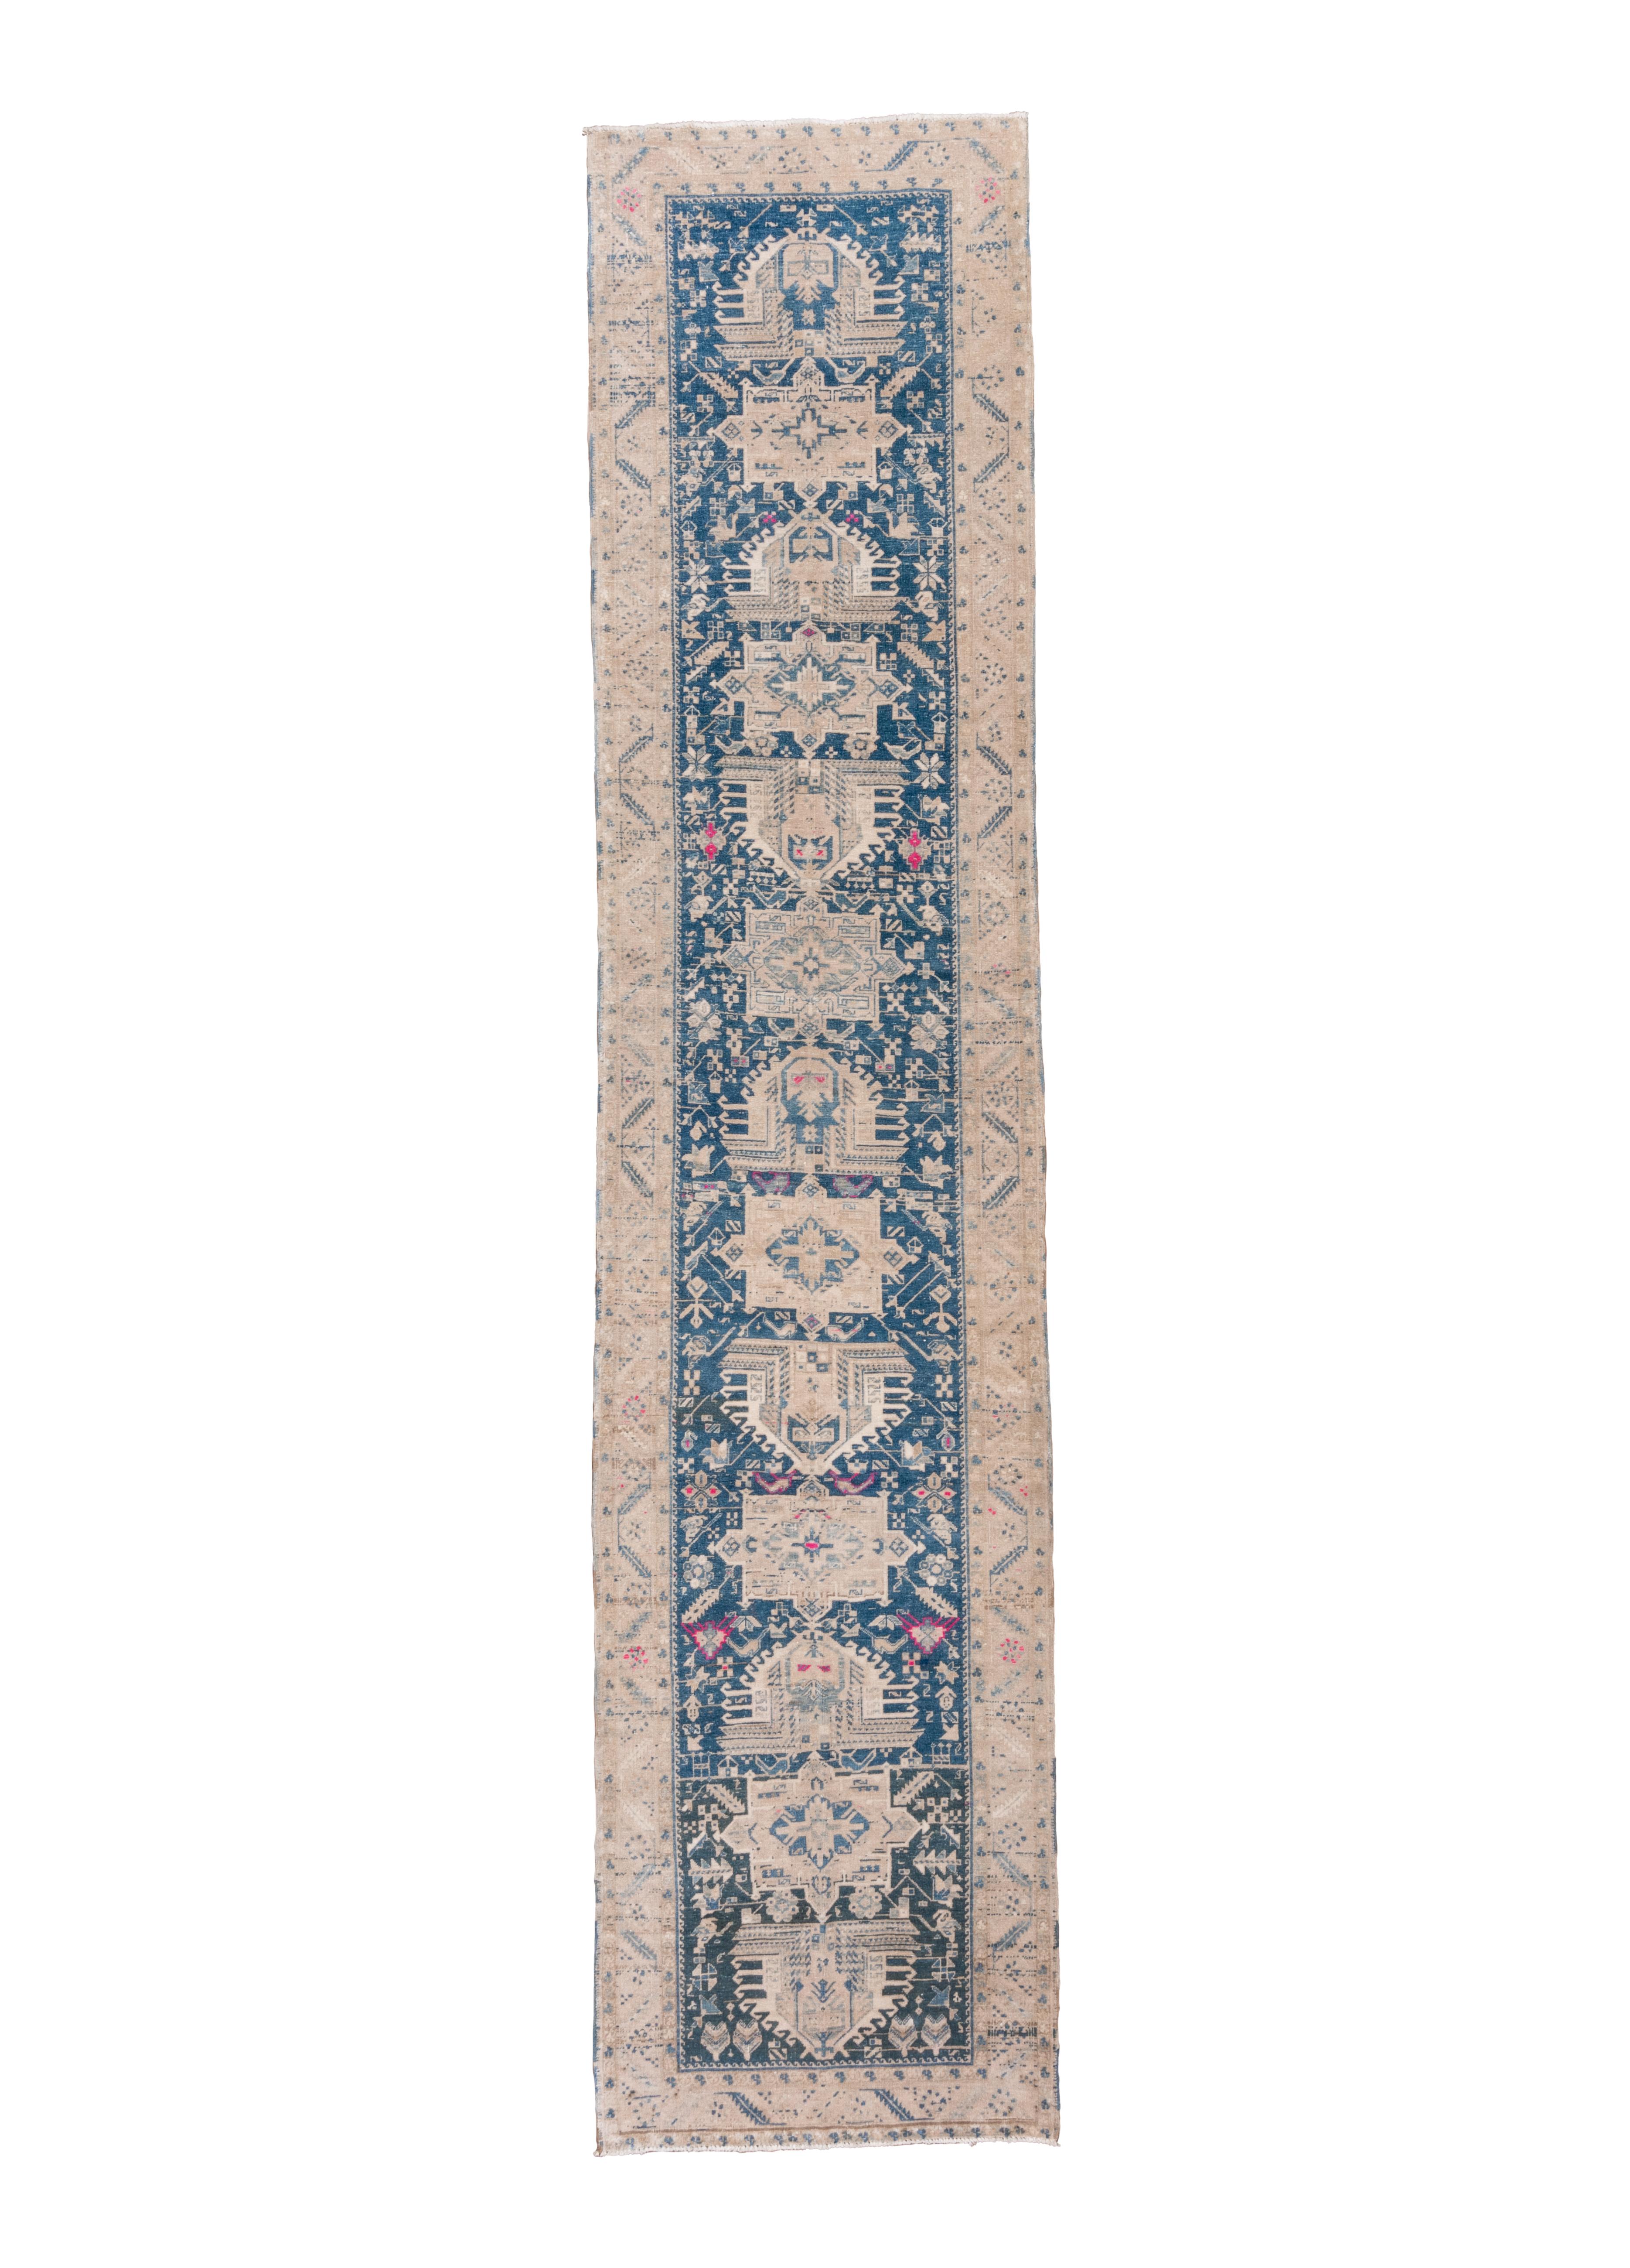 Dieses Kenare im Karaja-Stil zeigt einen tiefen indigoblauen Grund mit einem Stabmedaillon aus 13 Elementen, entweder Oktofolien oder elfenbeinumrandete stilisierte Palmetten/Fünfecke, die nach oben oder unten zeigen. Kleine Blumen, Quincunxe und 